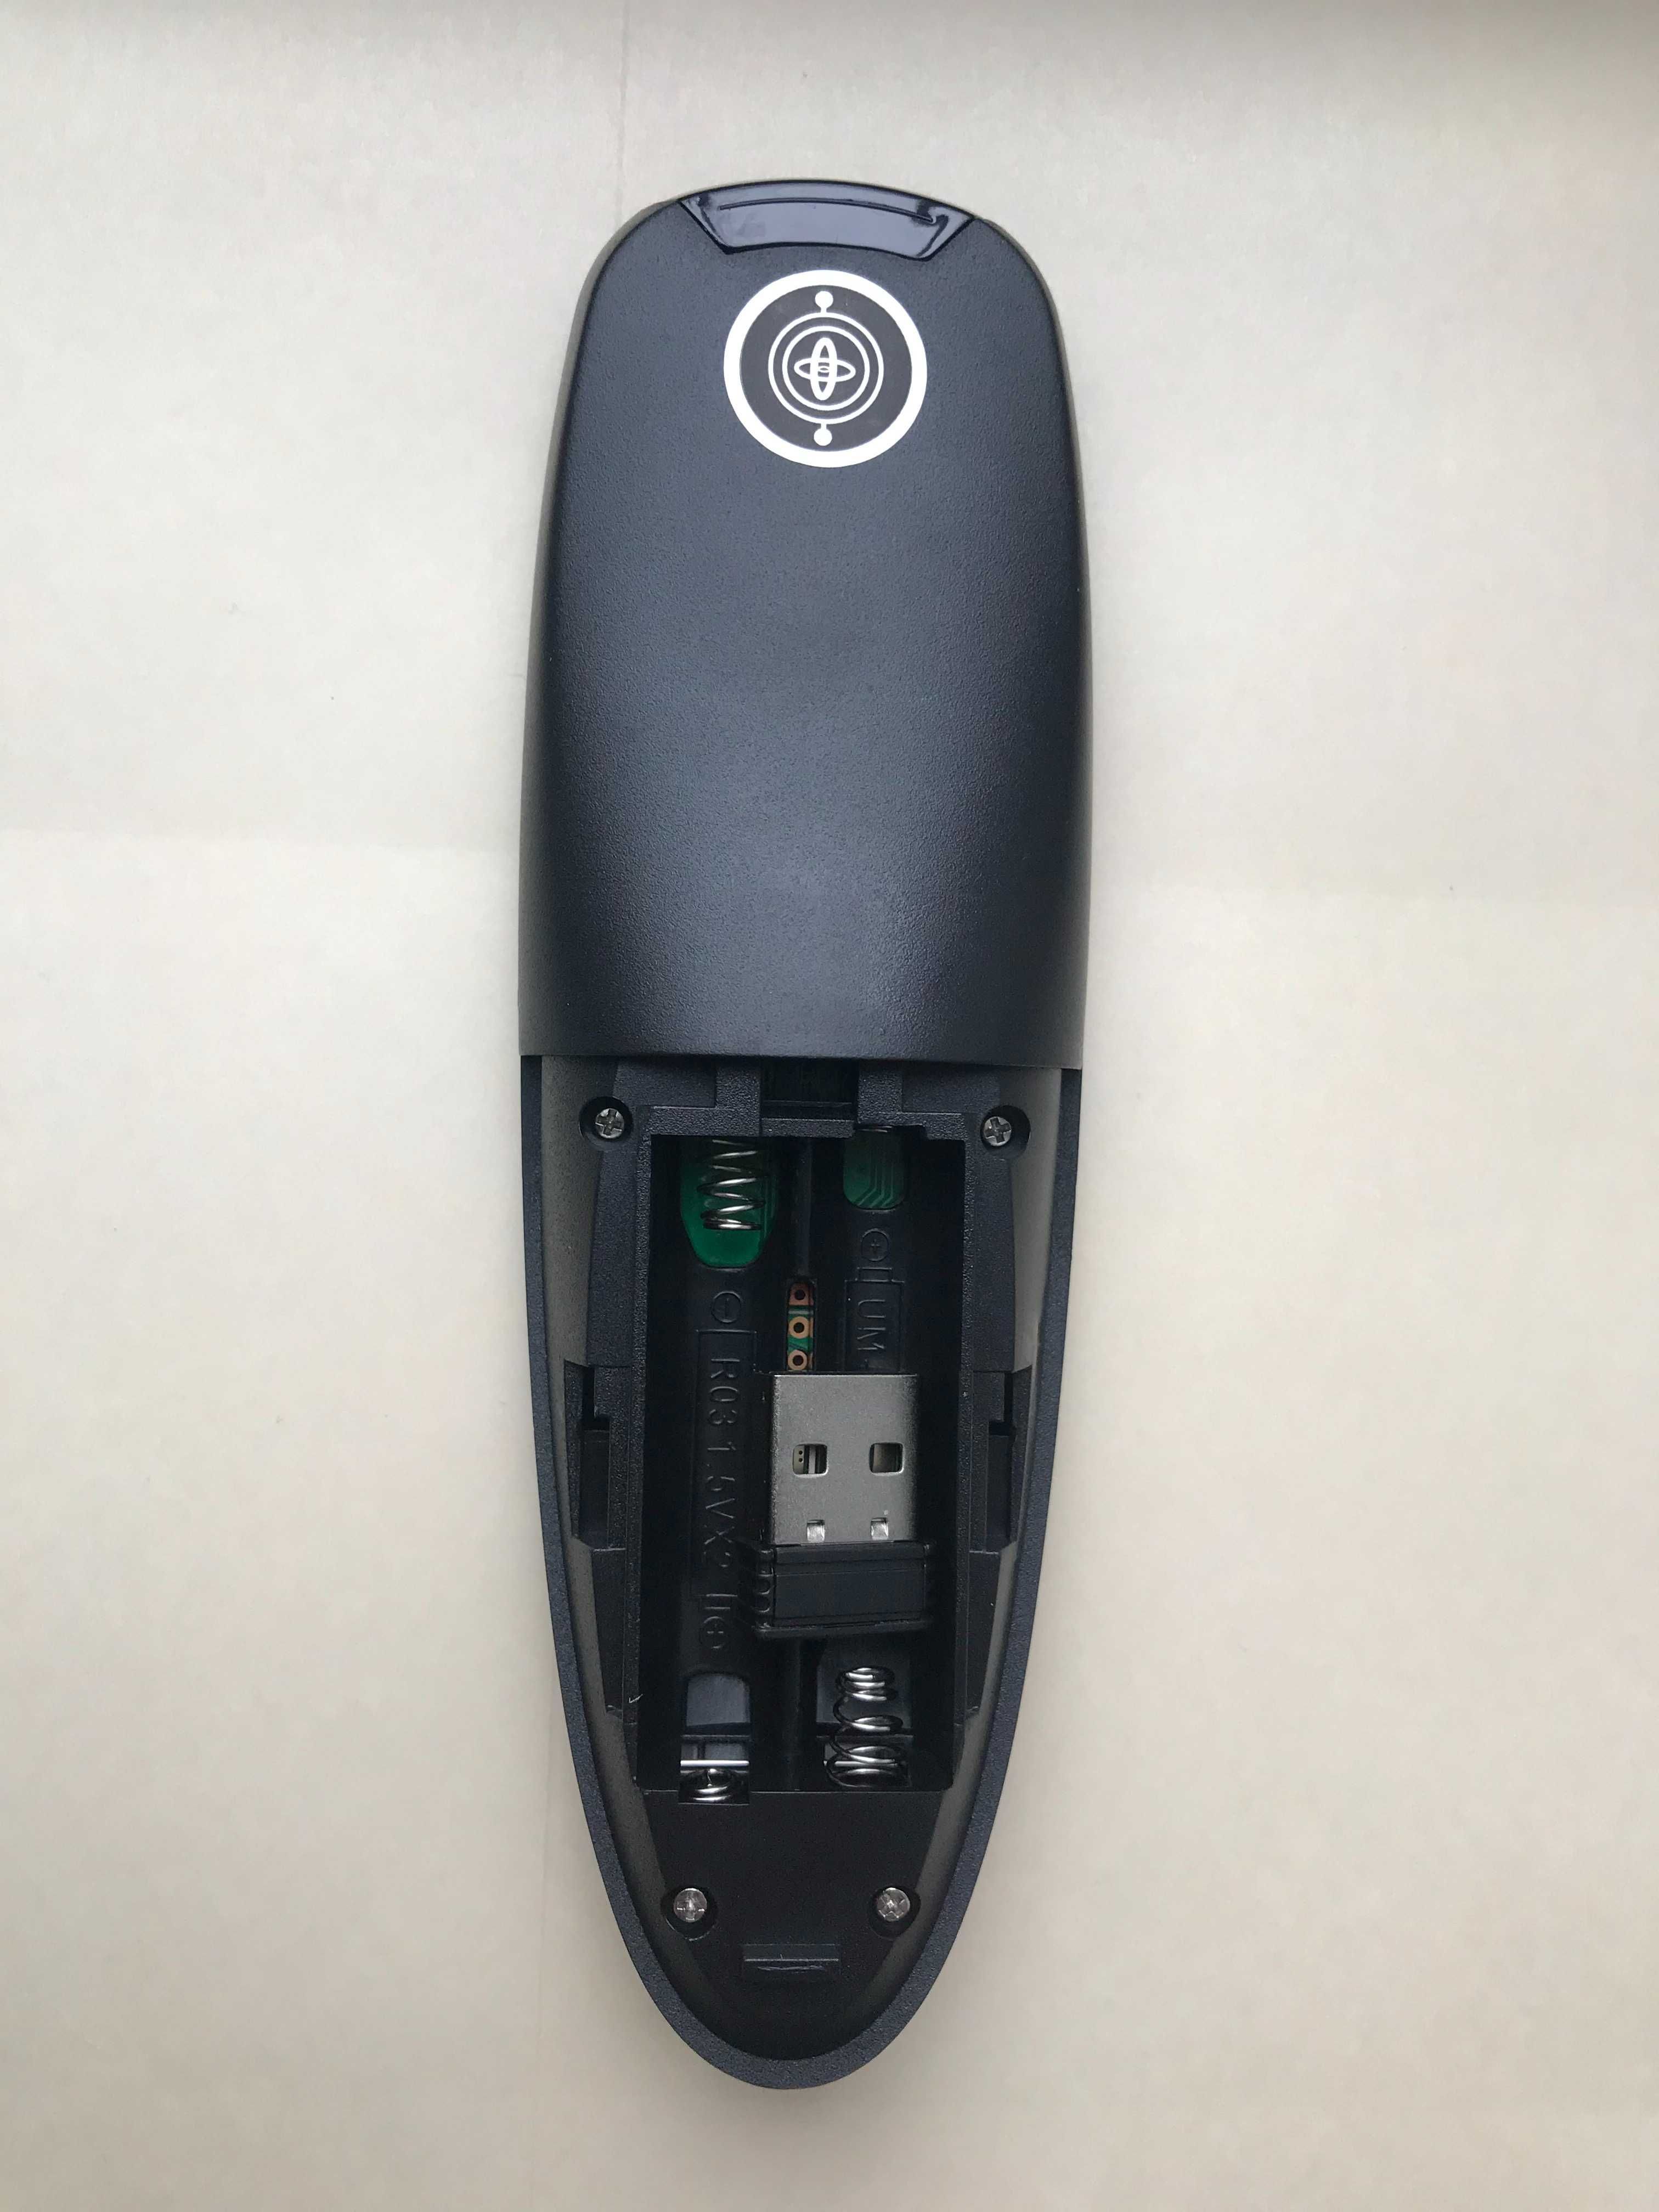 Пульт G10s Pro Air Mouse Аэро мышь, гироскоп микрофон подсветка